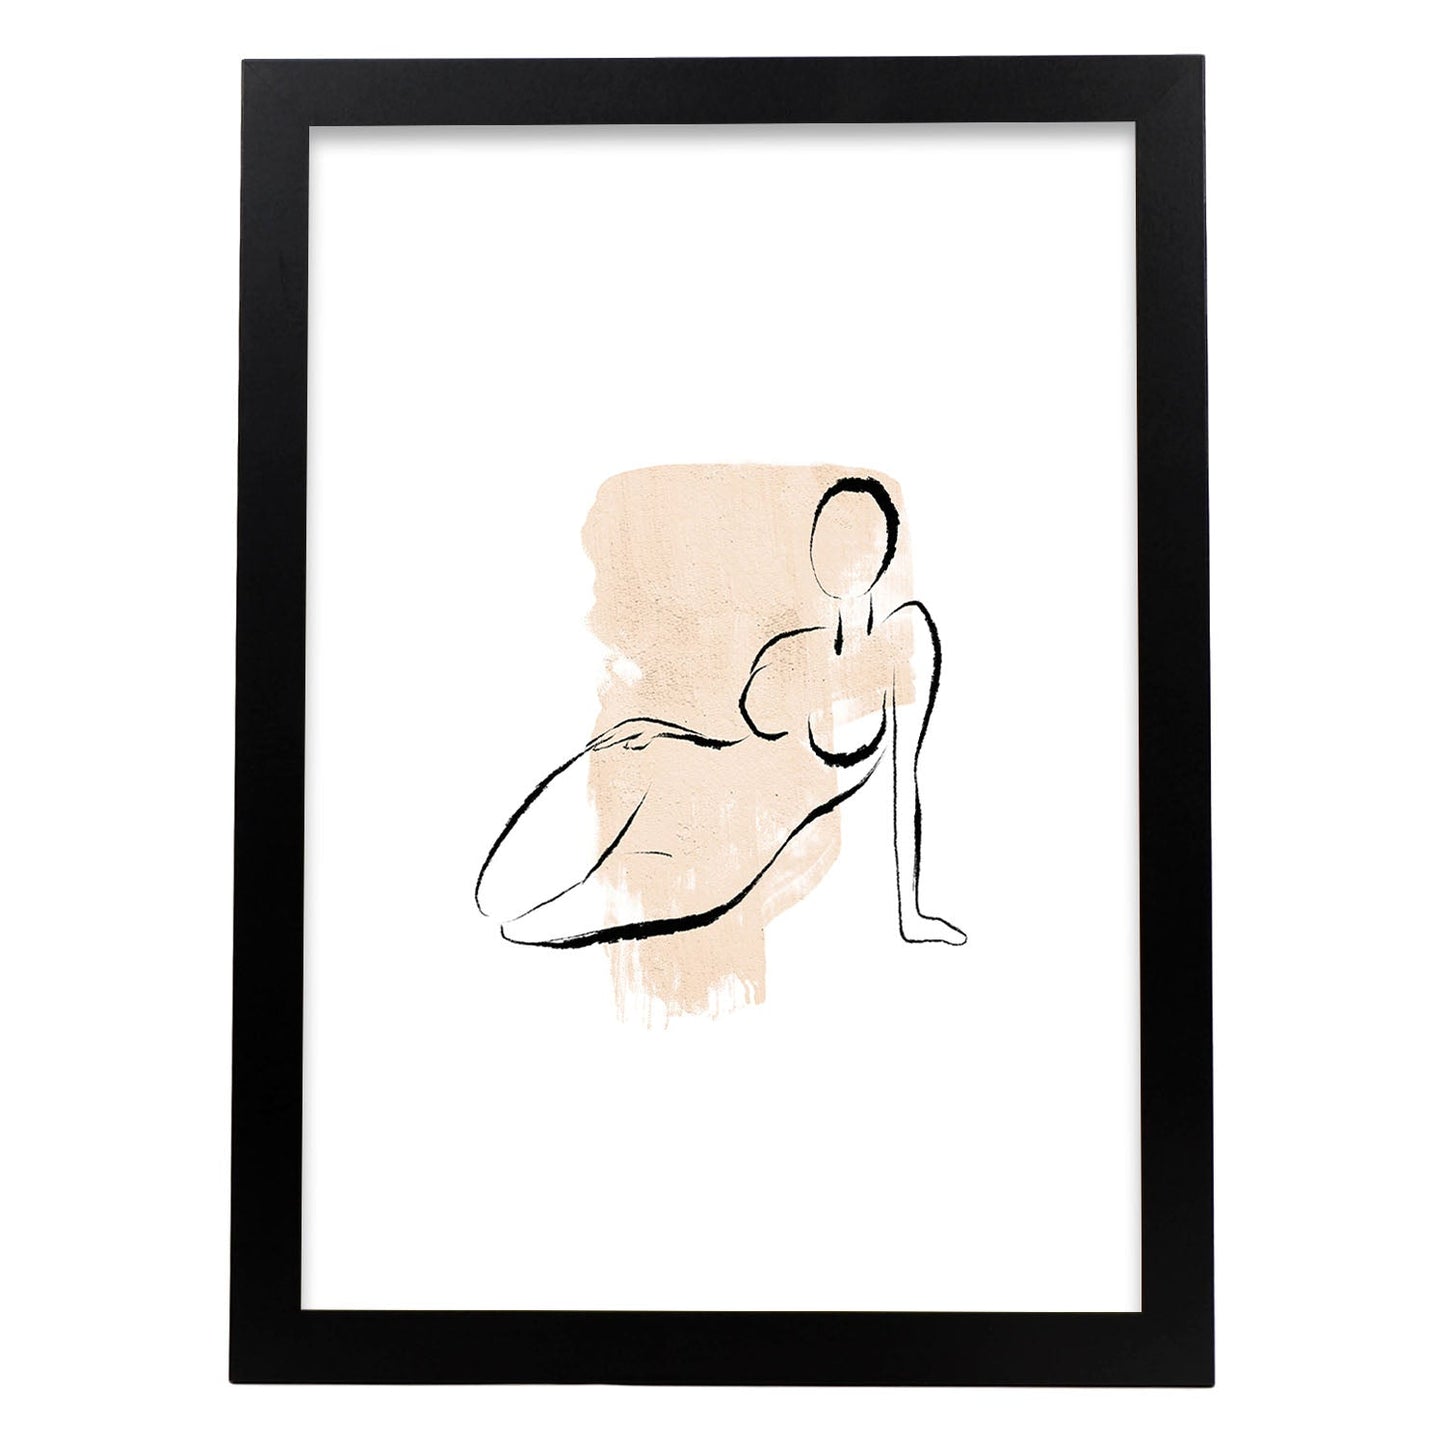 Poster con ilustracion de mujer. Dibujos con formas, caras, cuerpos y gestos de mujeres. 'Mujeres 14'.-Artwork-Nacnic-A4-Marco Negro-Nacnic Estudio SL